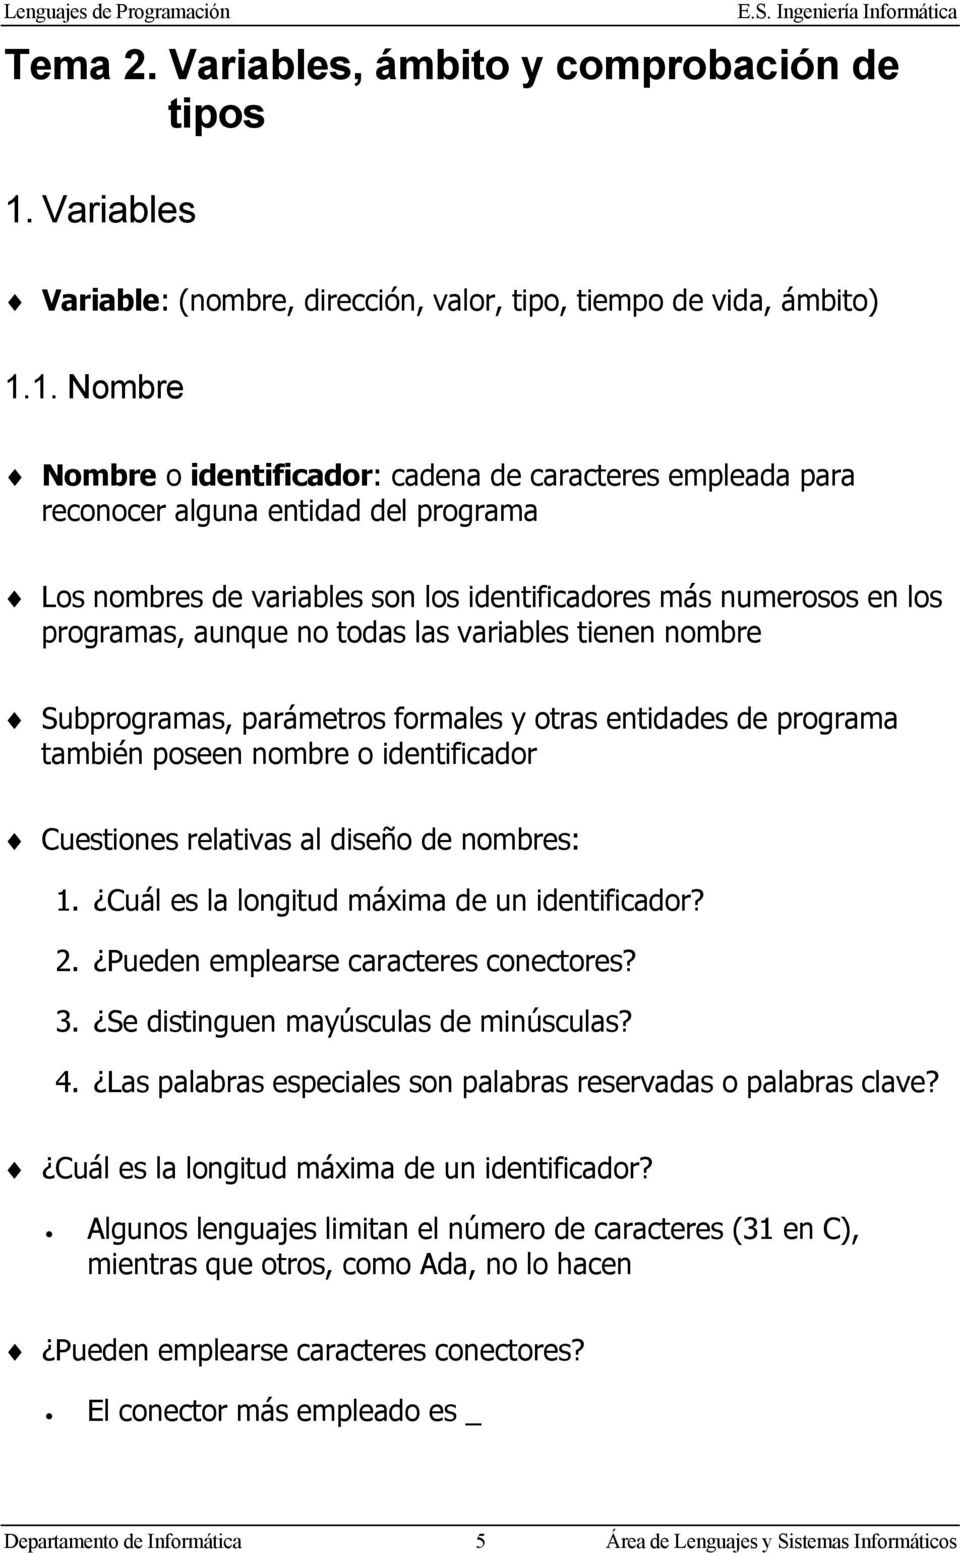 1. Nombre Nombre o identificador: cadena de caracteres empleada para reconocer alguna entidad del programa Los nombres de variables son los identificadores más numerosos en los programas, aunque no